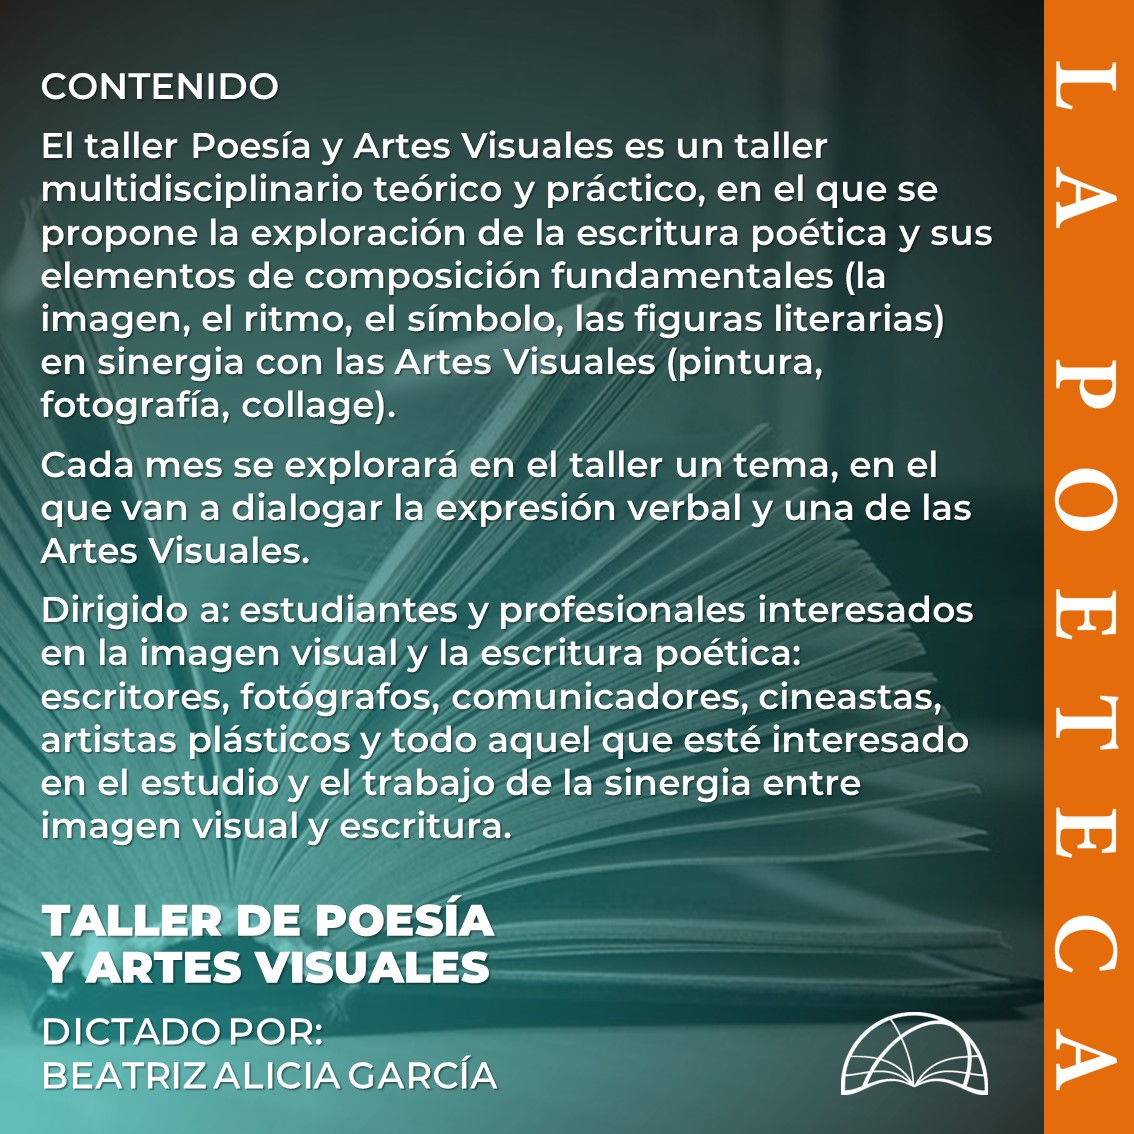 Tenemos un nuevo taller: Beatriz Alicia García (@bagarcian) explorará los elementos de composición poética y su sinergia con las artes visuales una vez al mes. En la primera sesión el tema será el collage. Si estás interesado escríbenos por el correo cursospoeteca@gmail.com